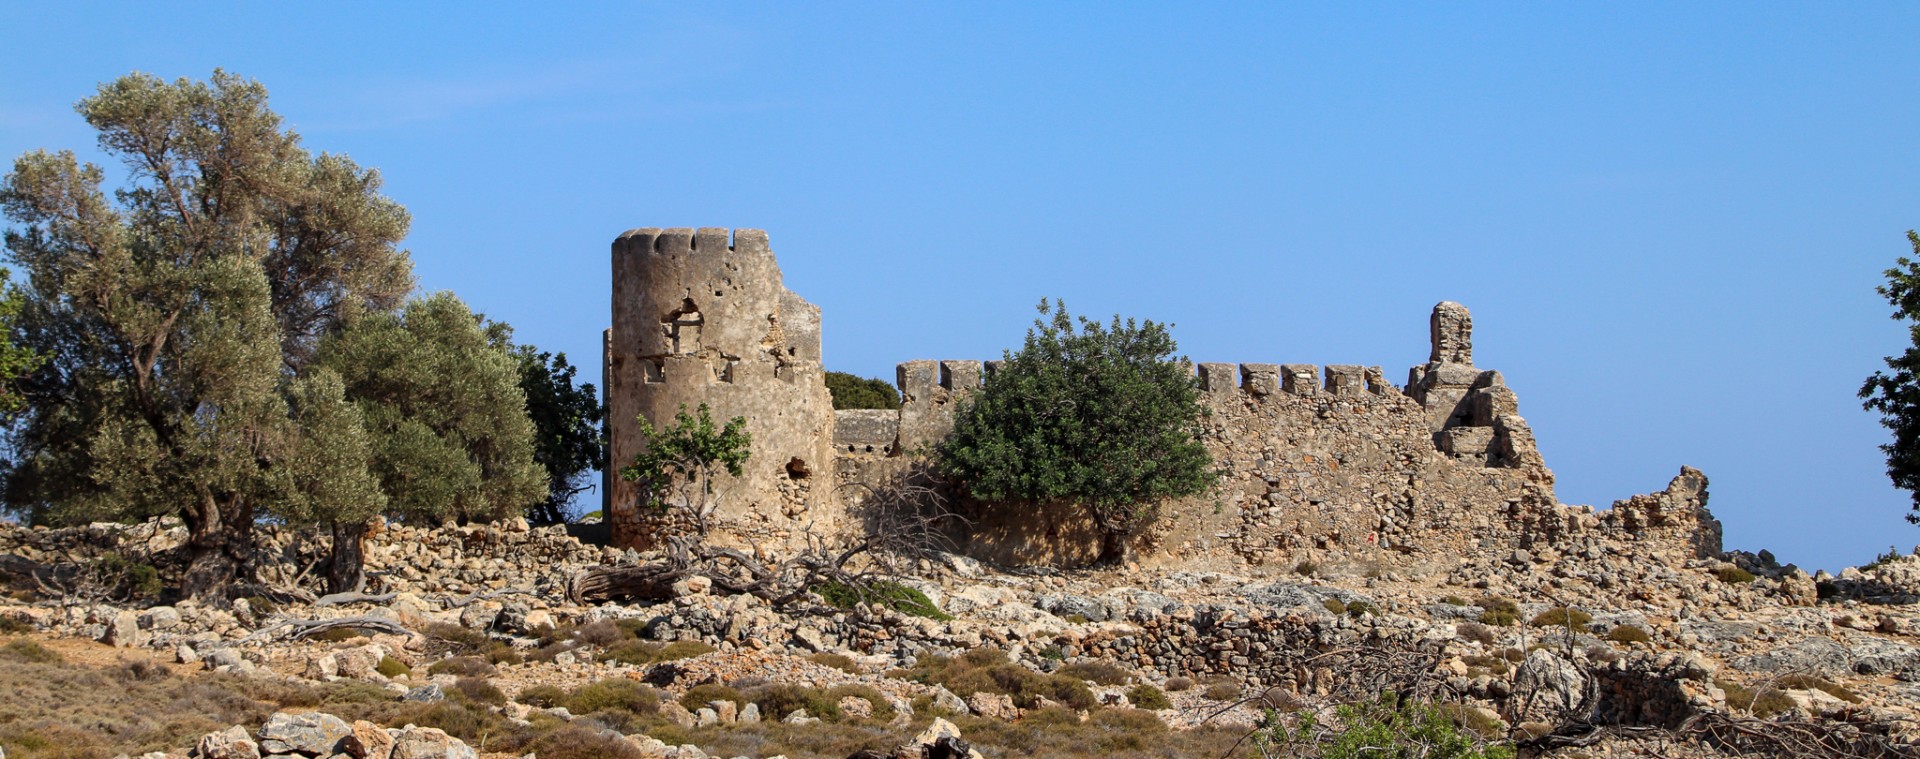 Den turkiska borgen mitt på udden